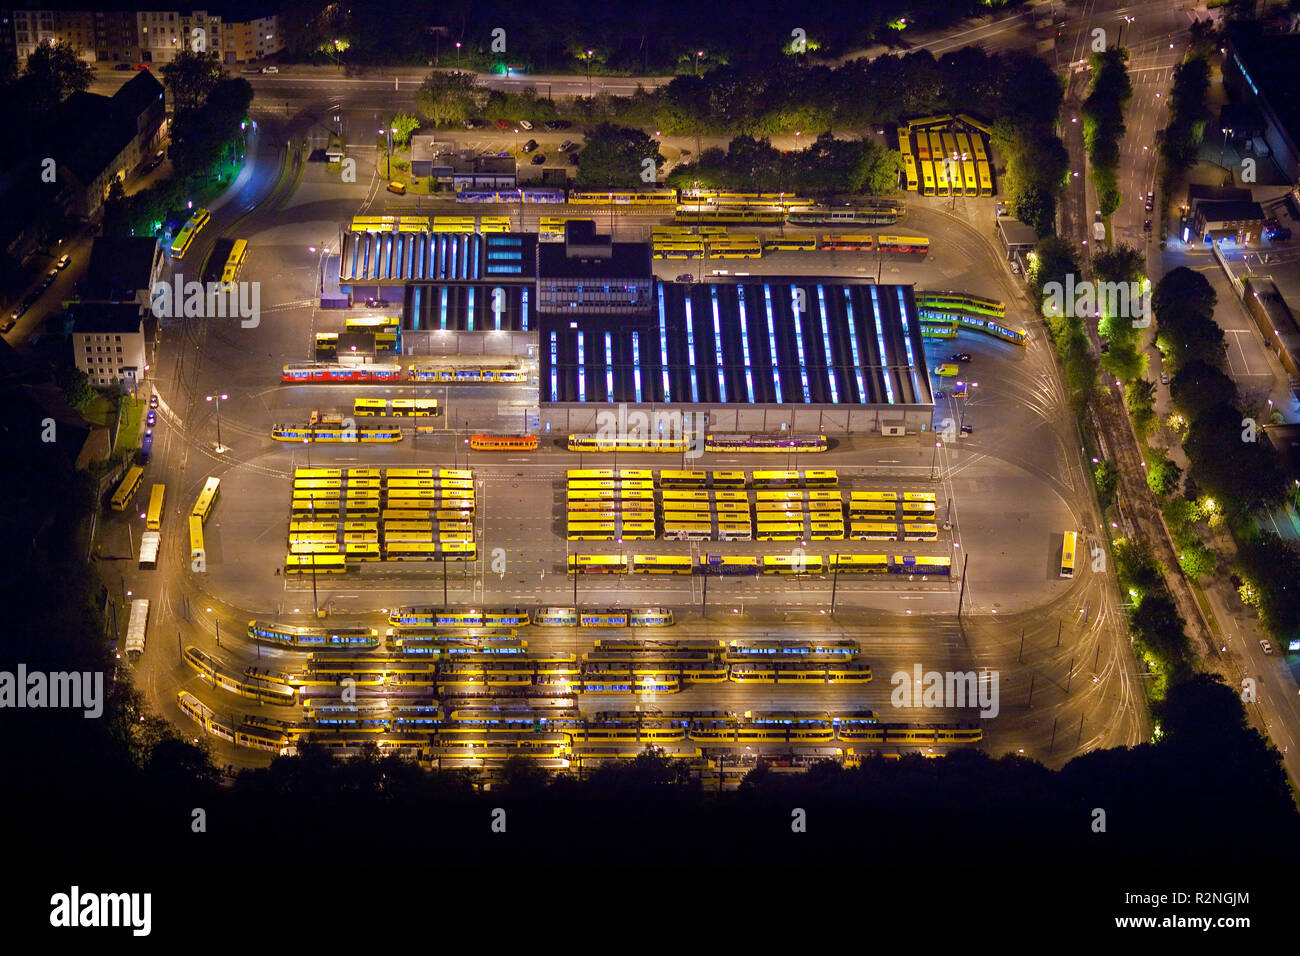 Vista aerea, night shot, Evag tram depot, Essen, la zona della Ruhr, Renania settentrionale-Vestfalia, Germania, Europa Foto Stock